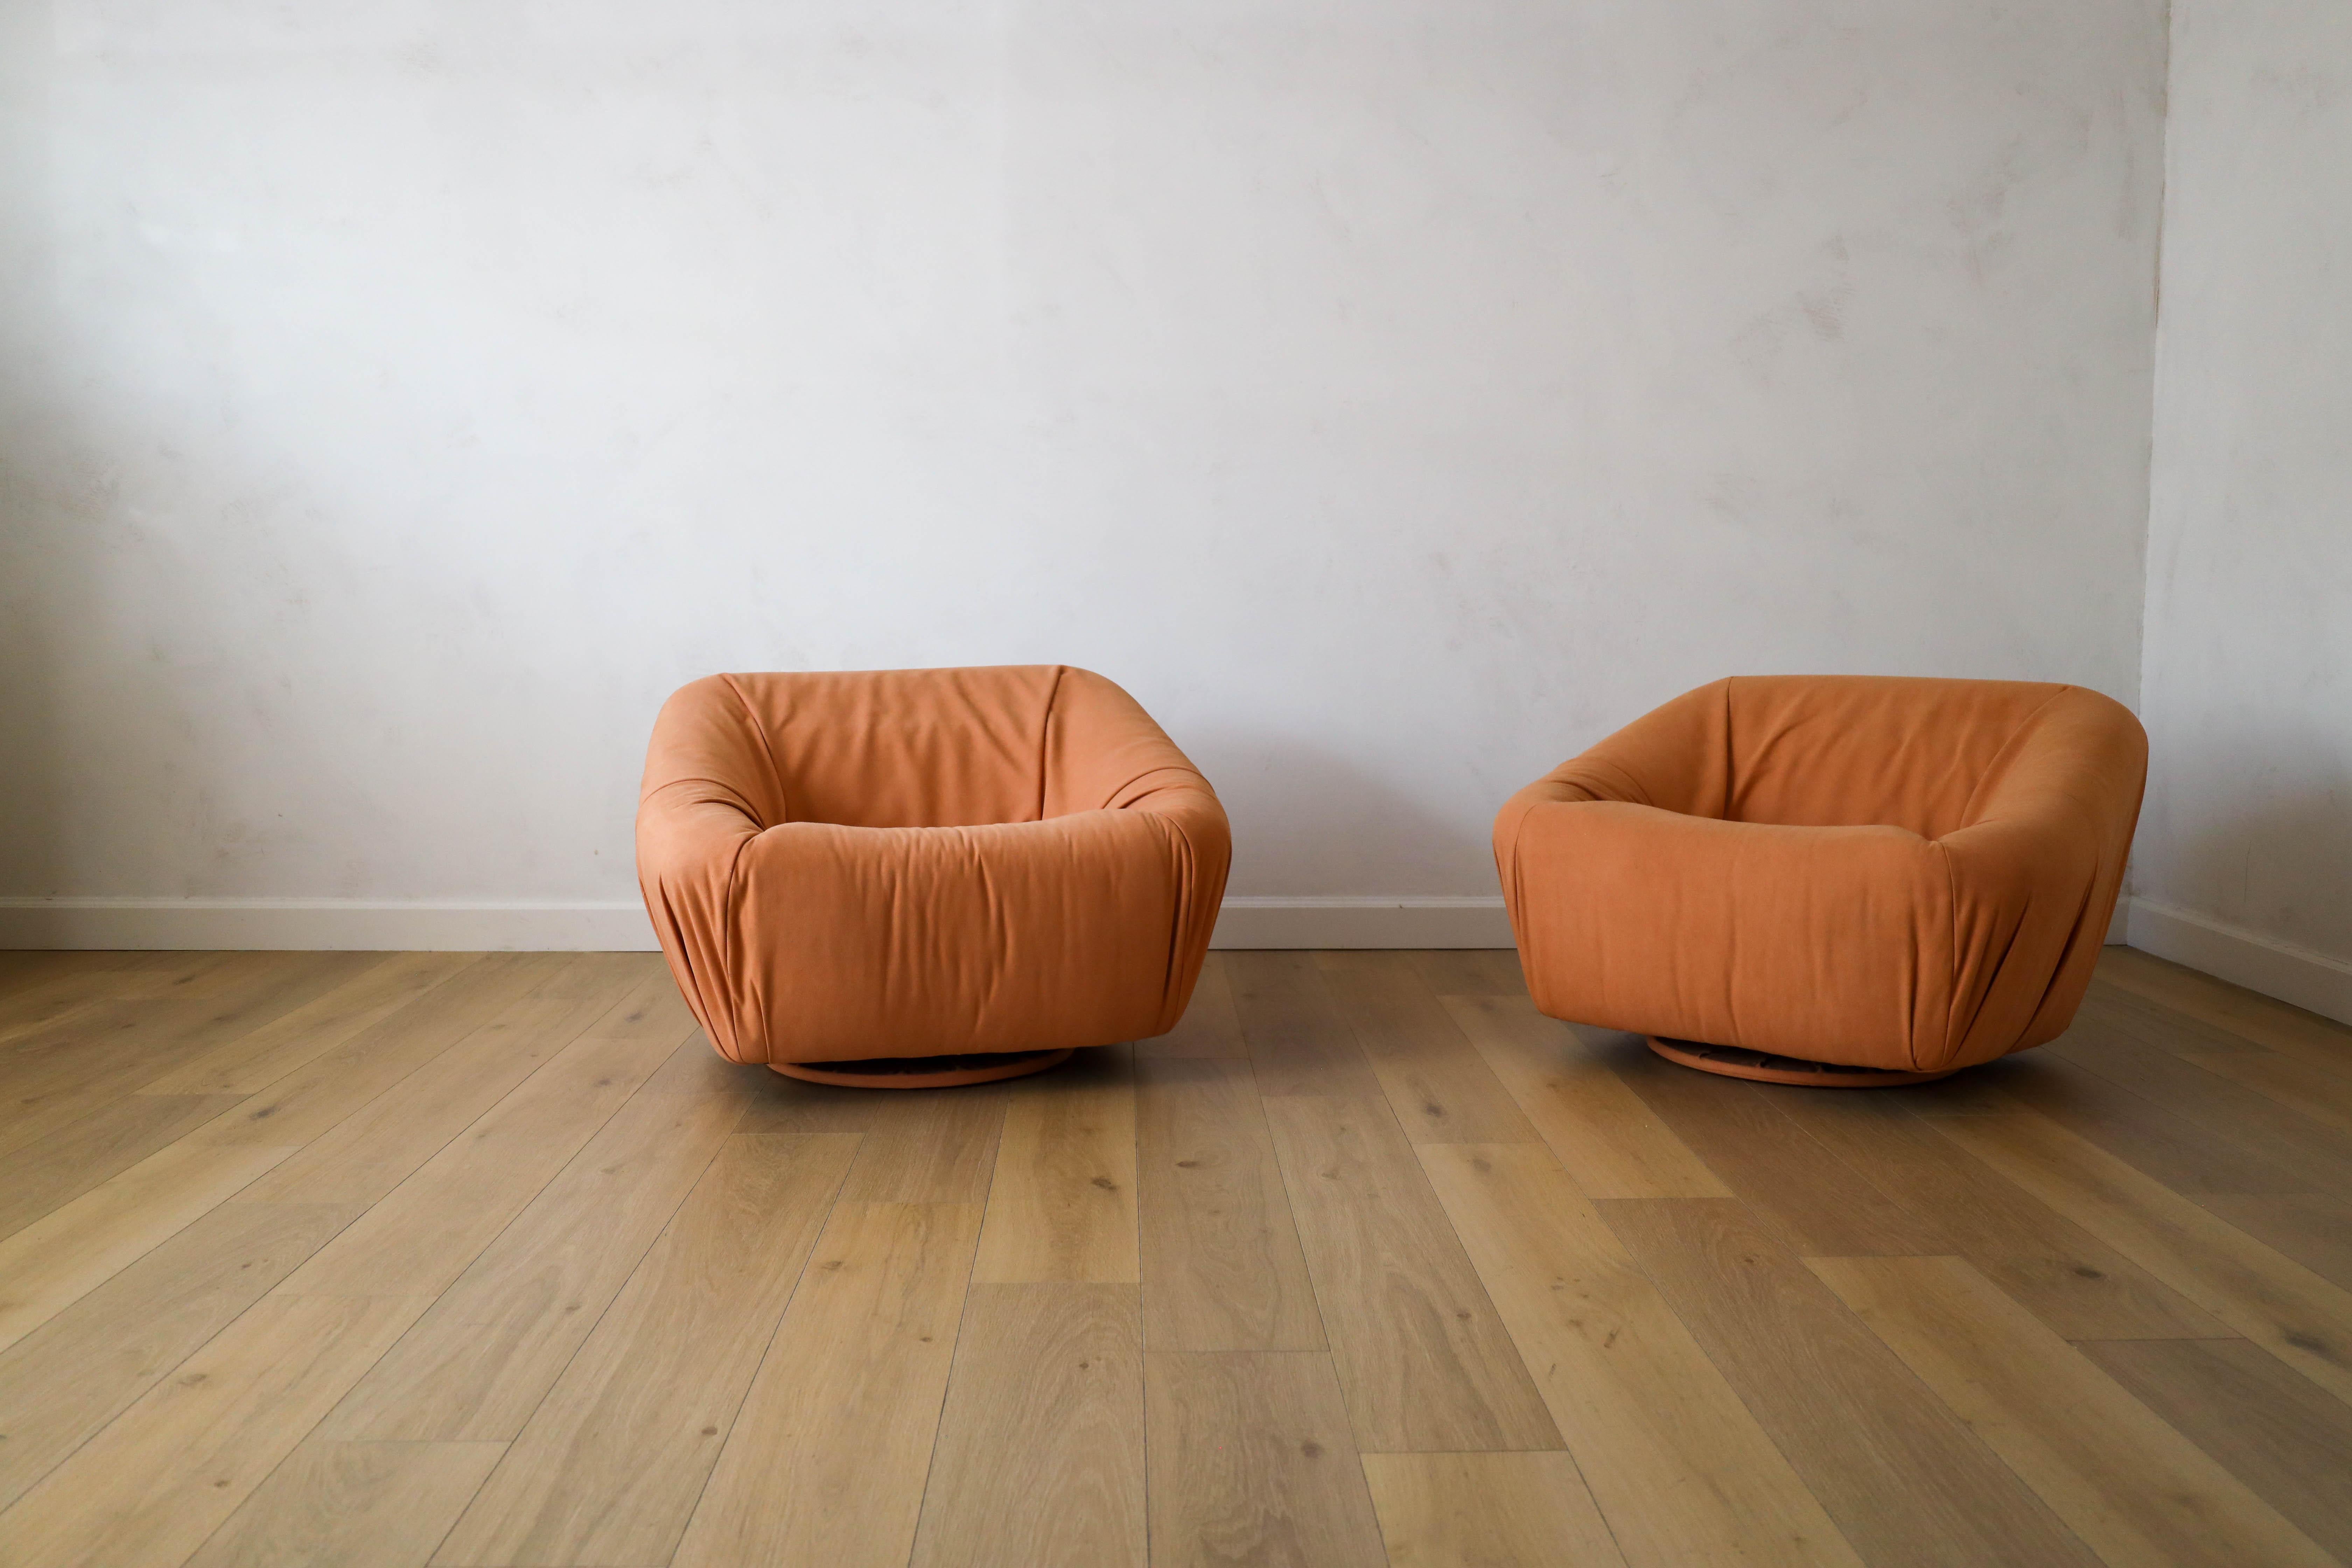 Ensemble de rares chaises pivotantes européennes datant des années 1950, retapissées dans un daim souple et luxueux dans les tons de curcuma par Kirky Design via The Romo Group. La paire offre à la fois style et confort tout en ajoutant une belle